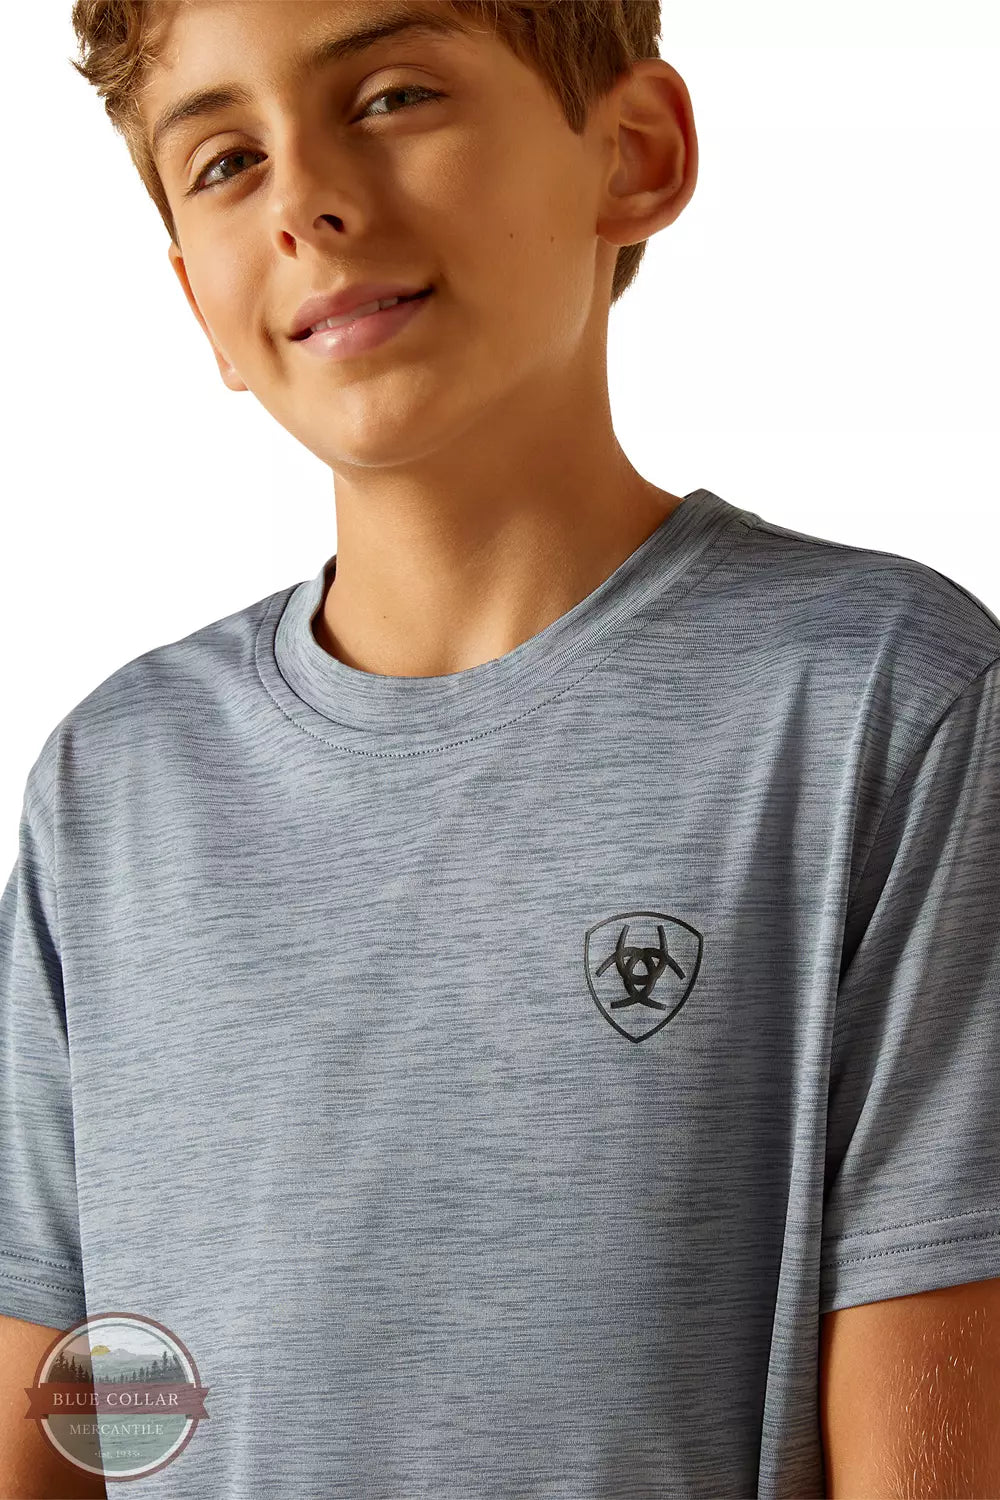 Ariat 10048650 Newsboy Blue Charger Spirited T-Shirt Detail View